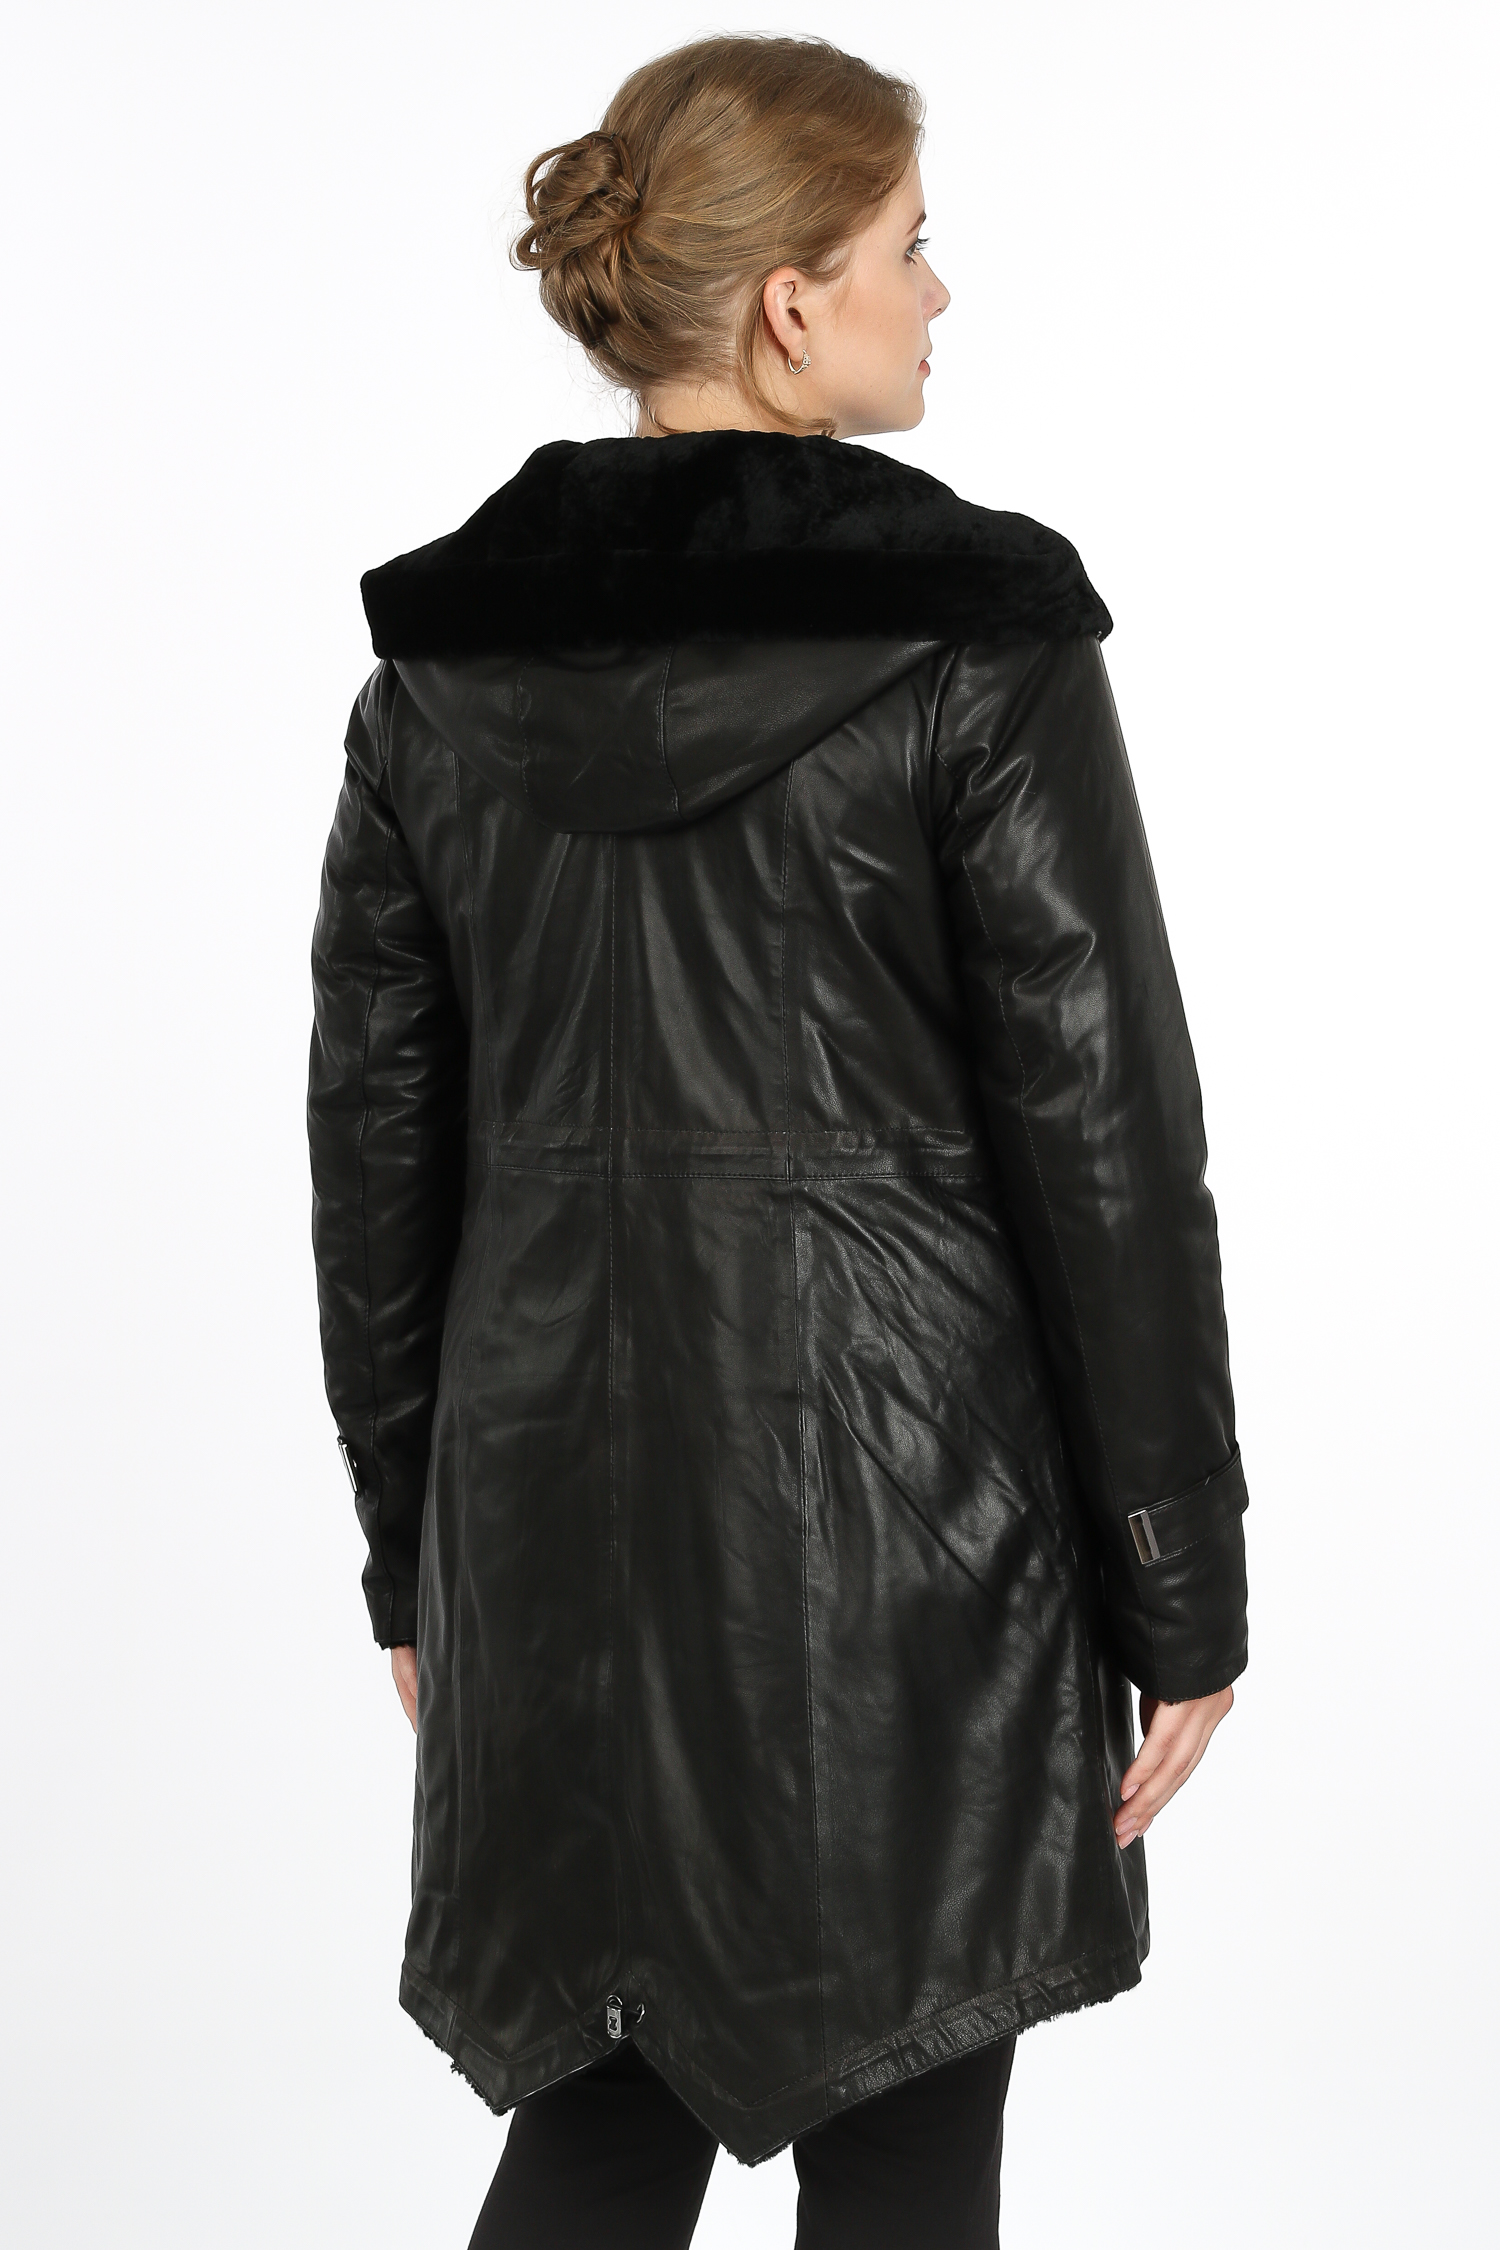 Женская кожаная куртка из натуральной кожи на меху с капюшоном, без отделки